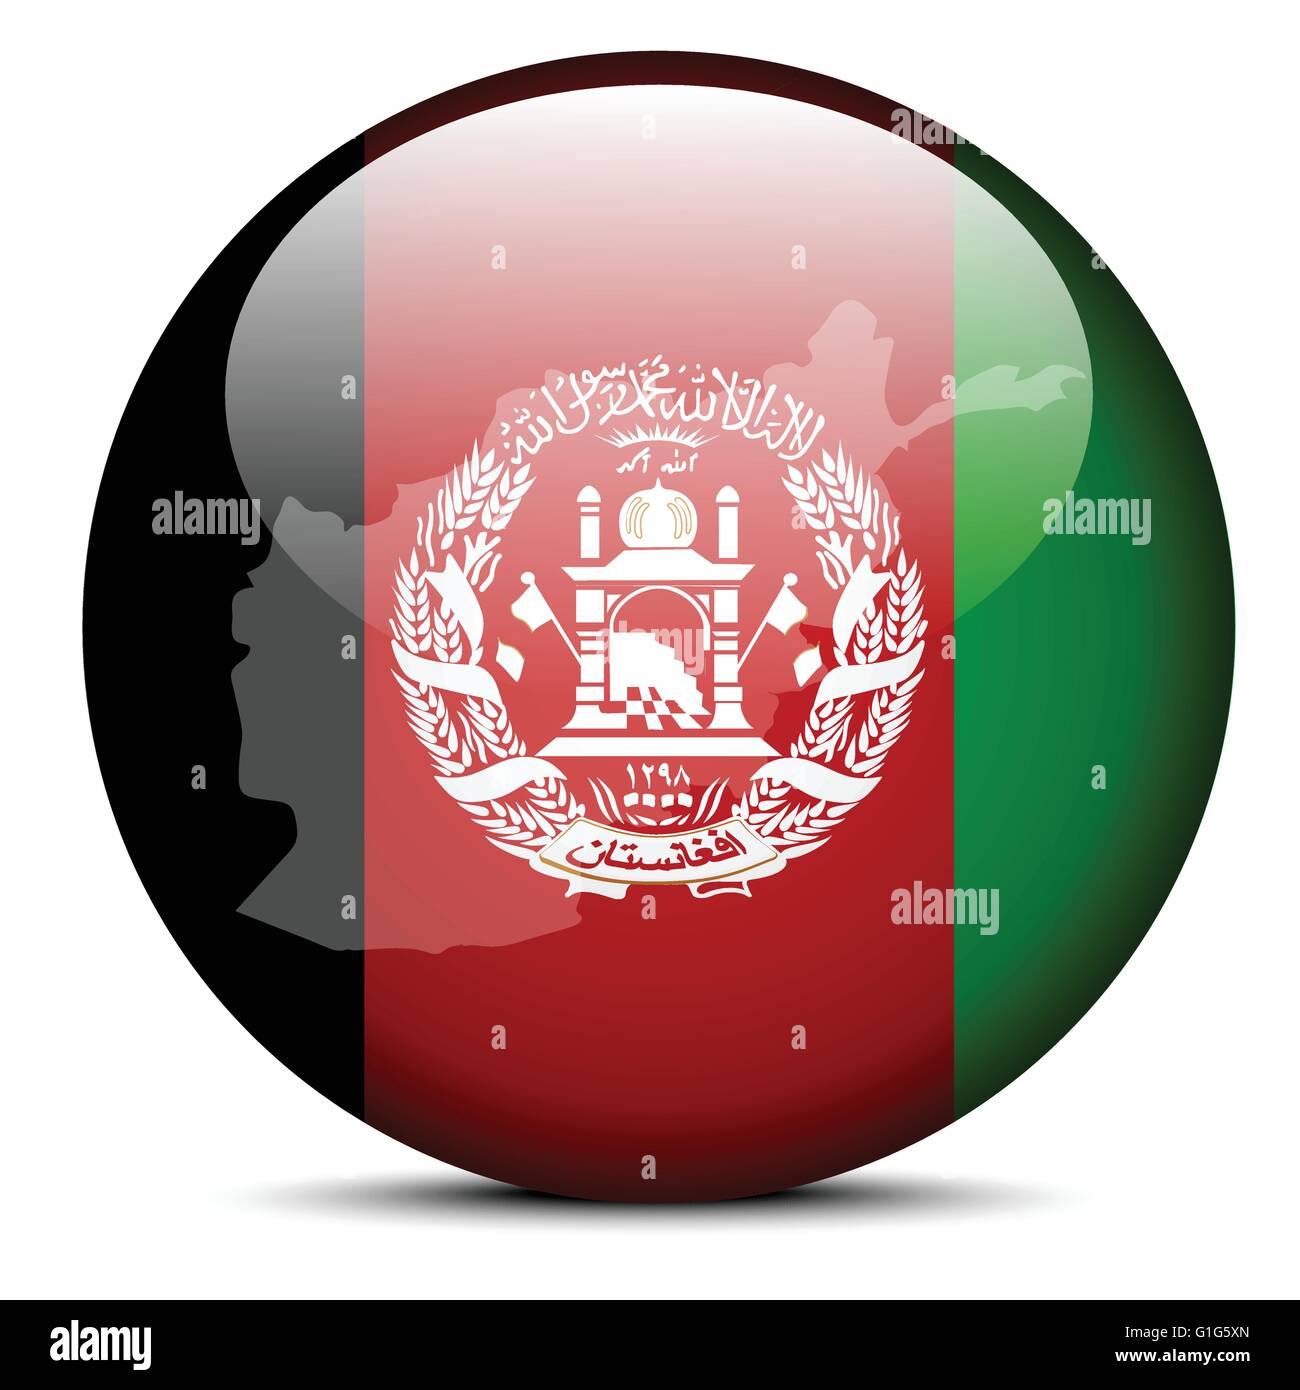 Vektor-Illustration - Karte auf die Schaltfläche melden der islamischen Republik Afghanistan Stock Vektor